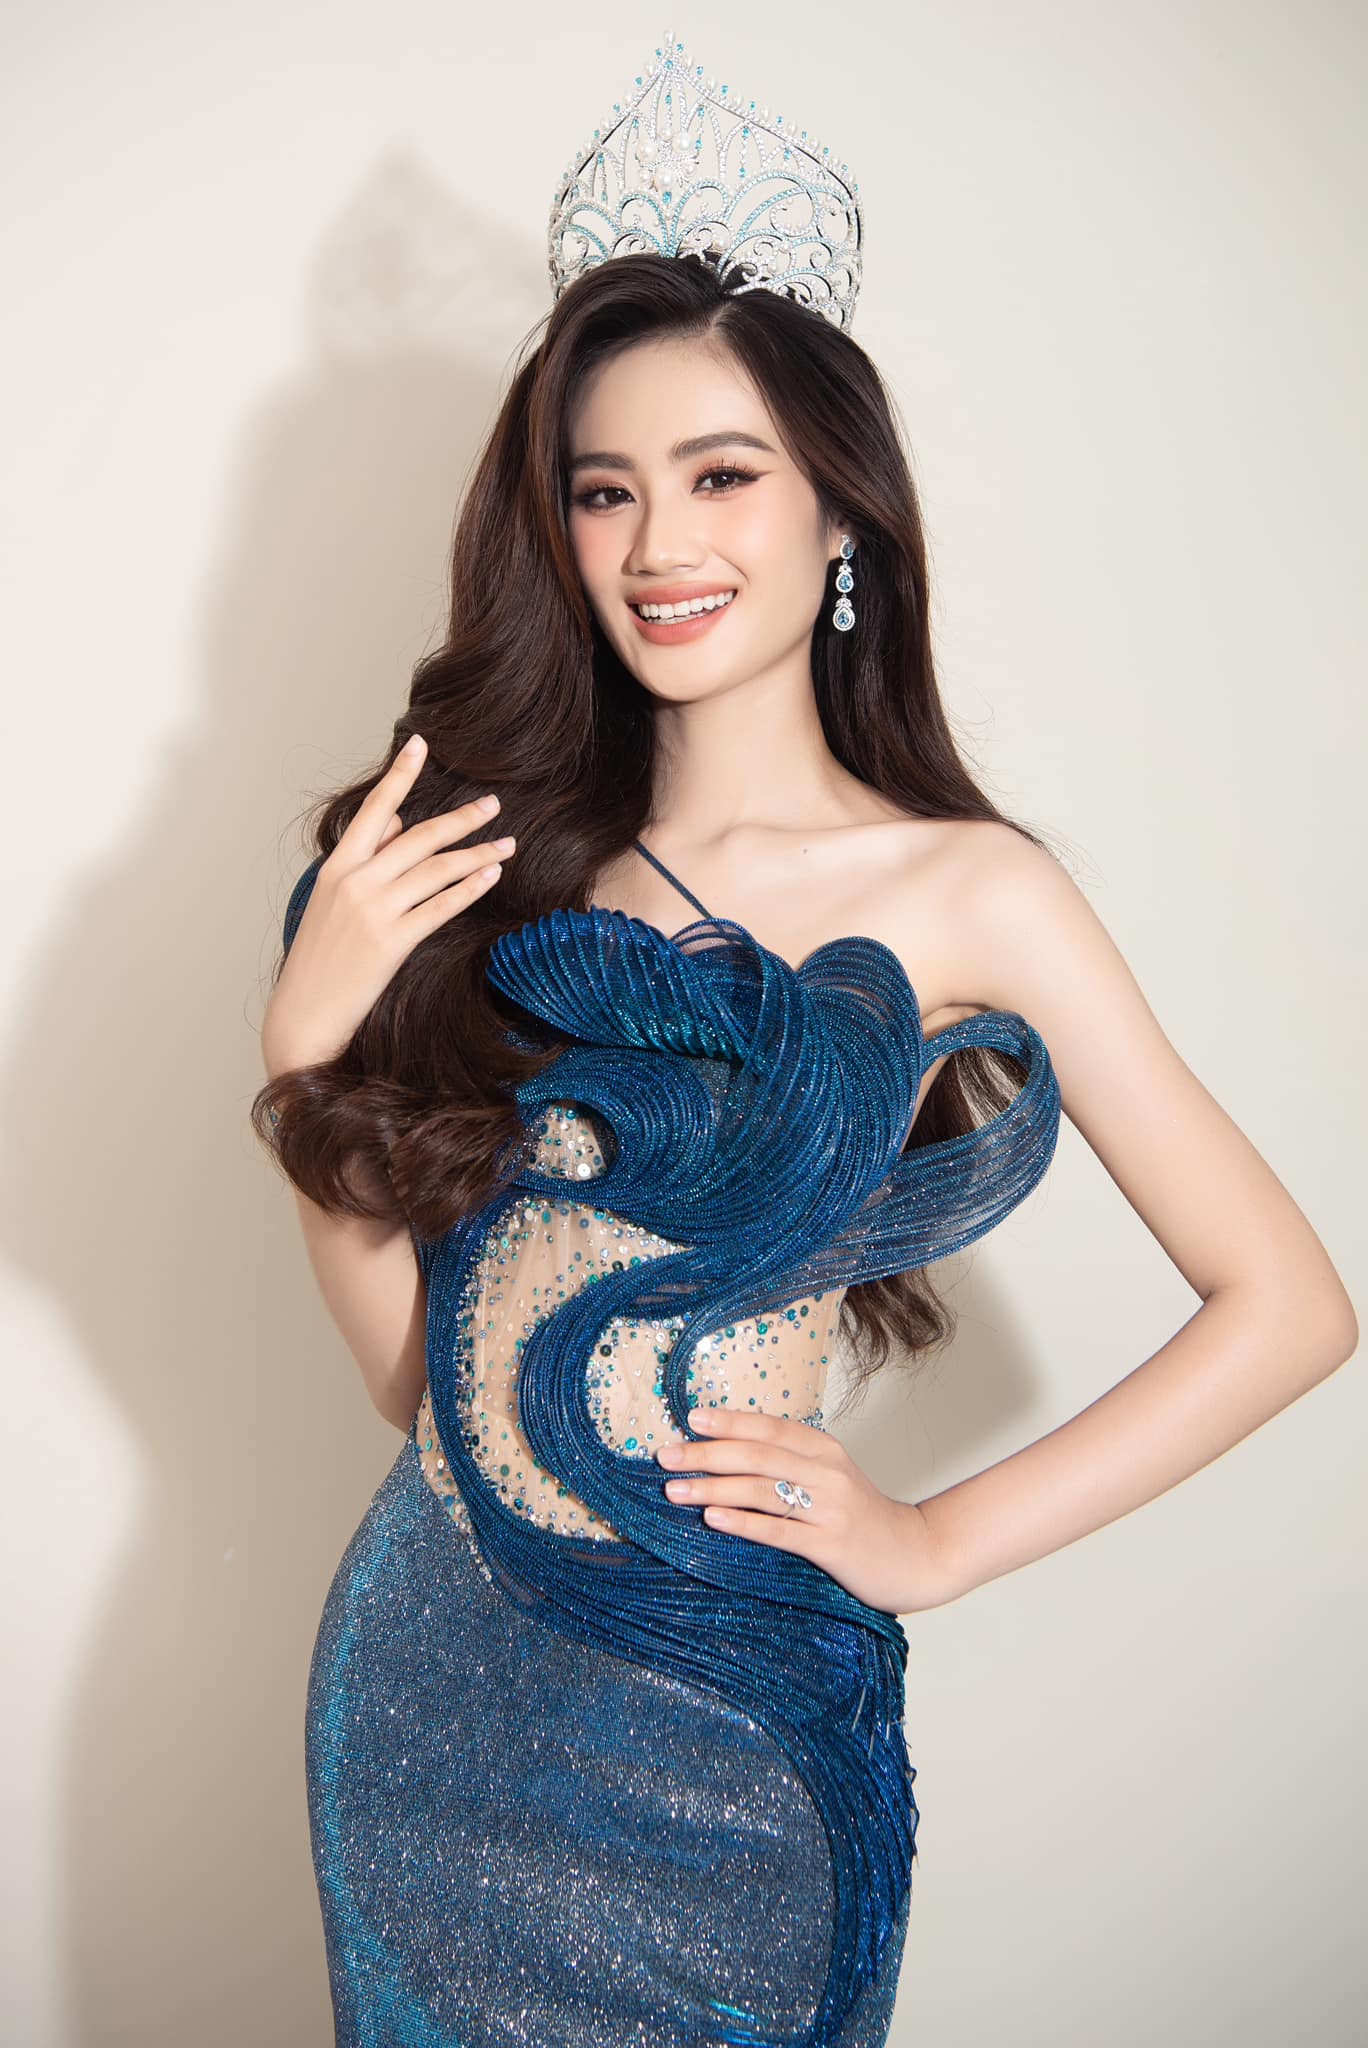 Sao nam yêu cầu tước vương miện Ý Nhi để làm gương tham gia nhóm 'anti', BTC Miss World Vietnam có phản hồi gì? - ảnh 3